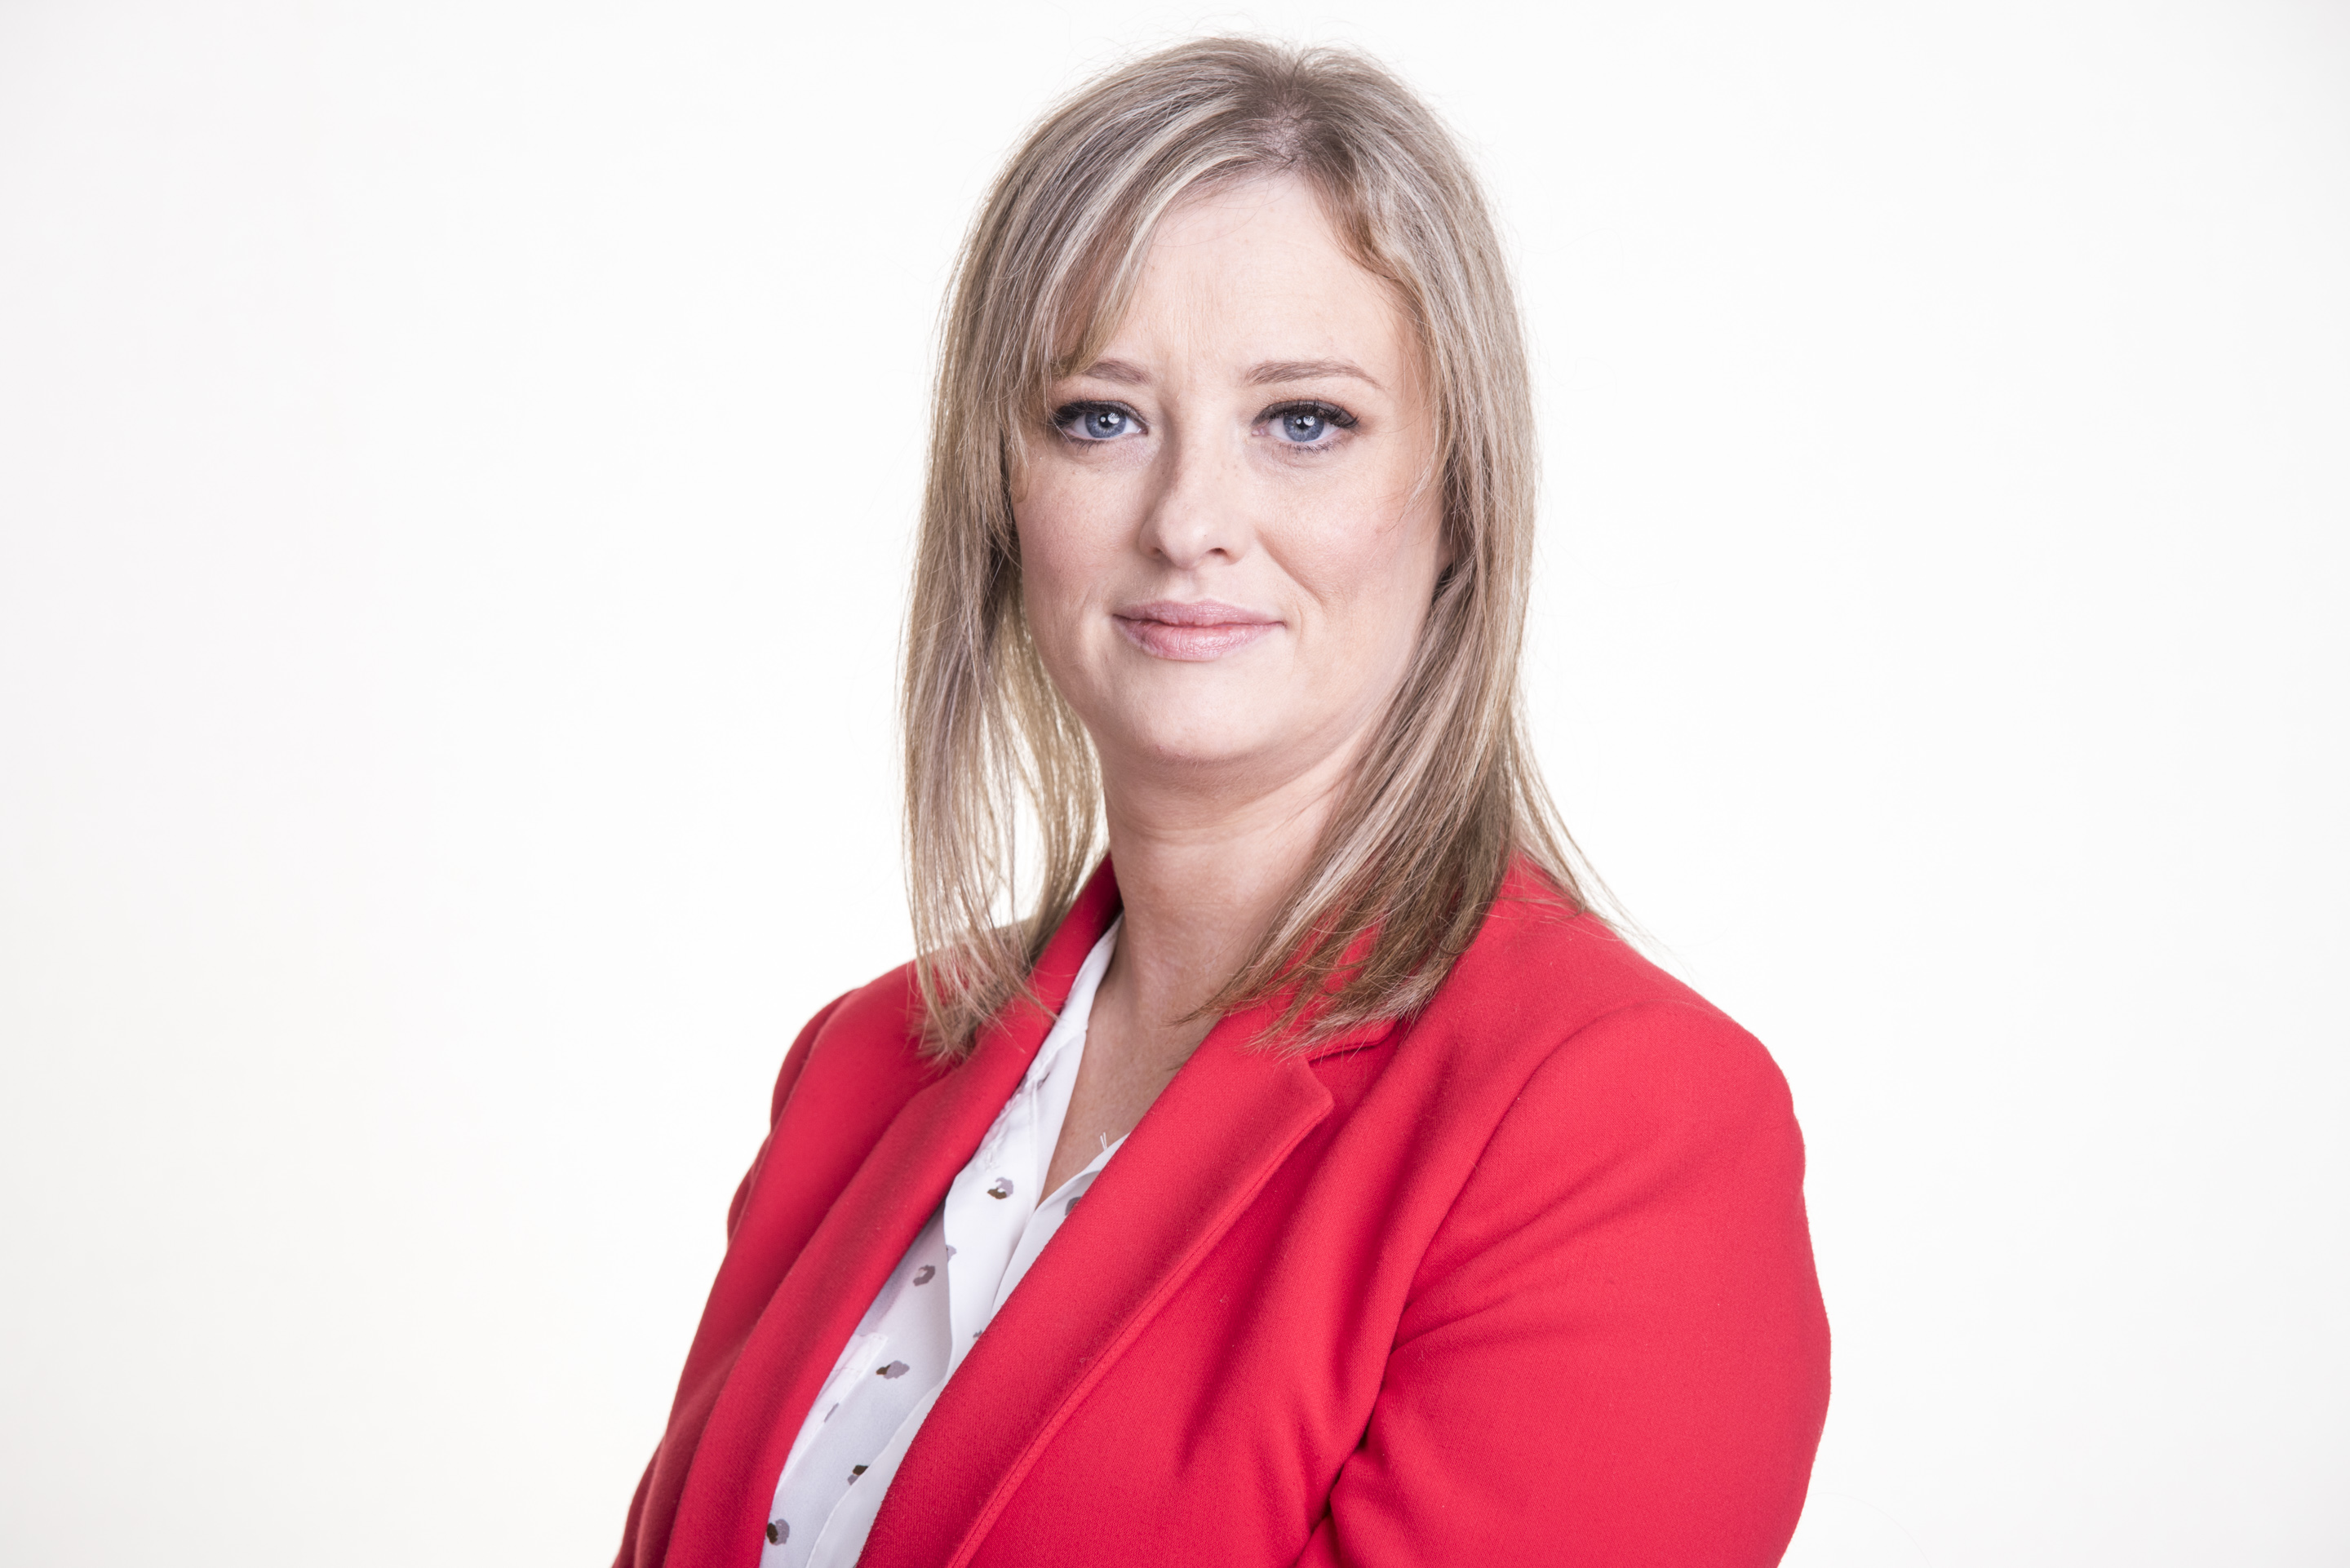 Colour head and shoulders photograph of Máiría Cahill, a former Member of Seanad Éireann.